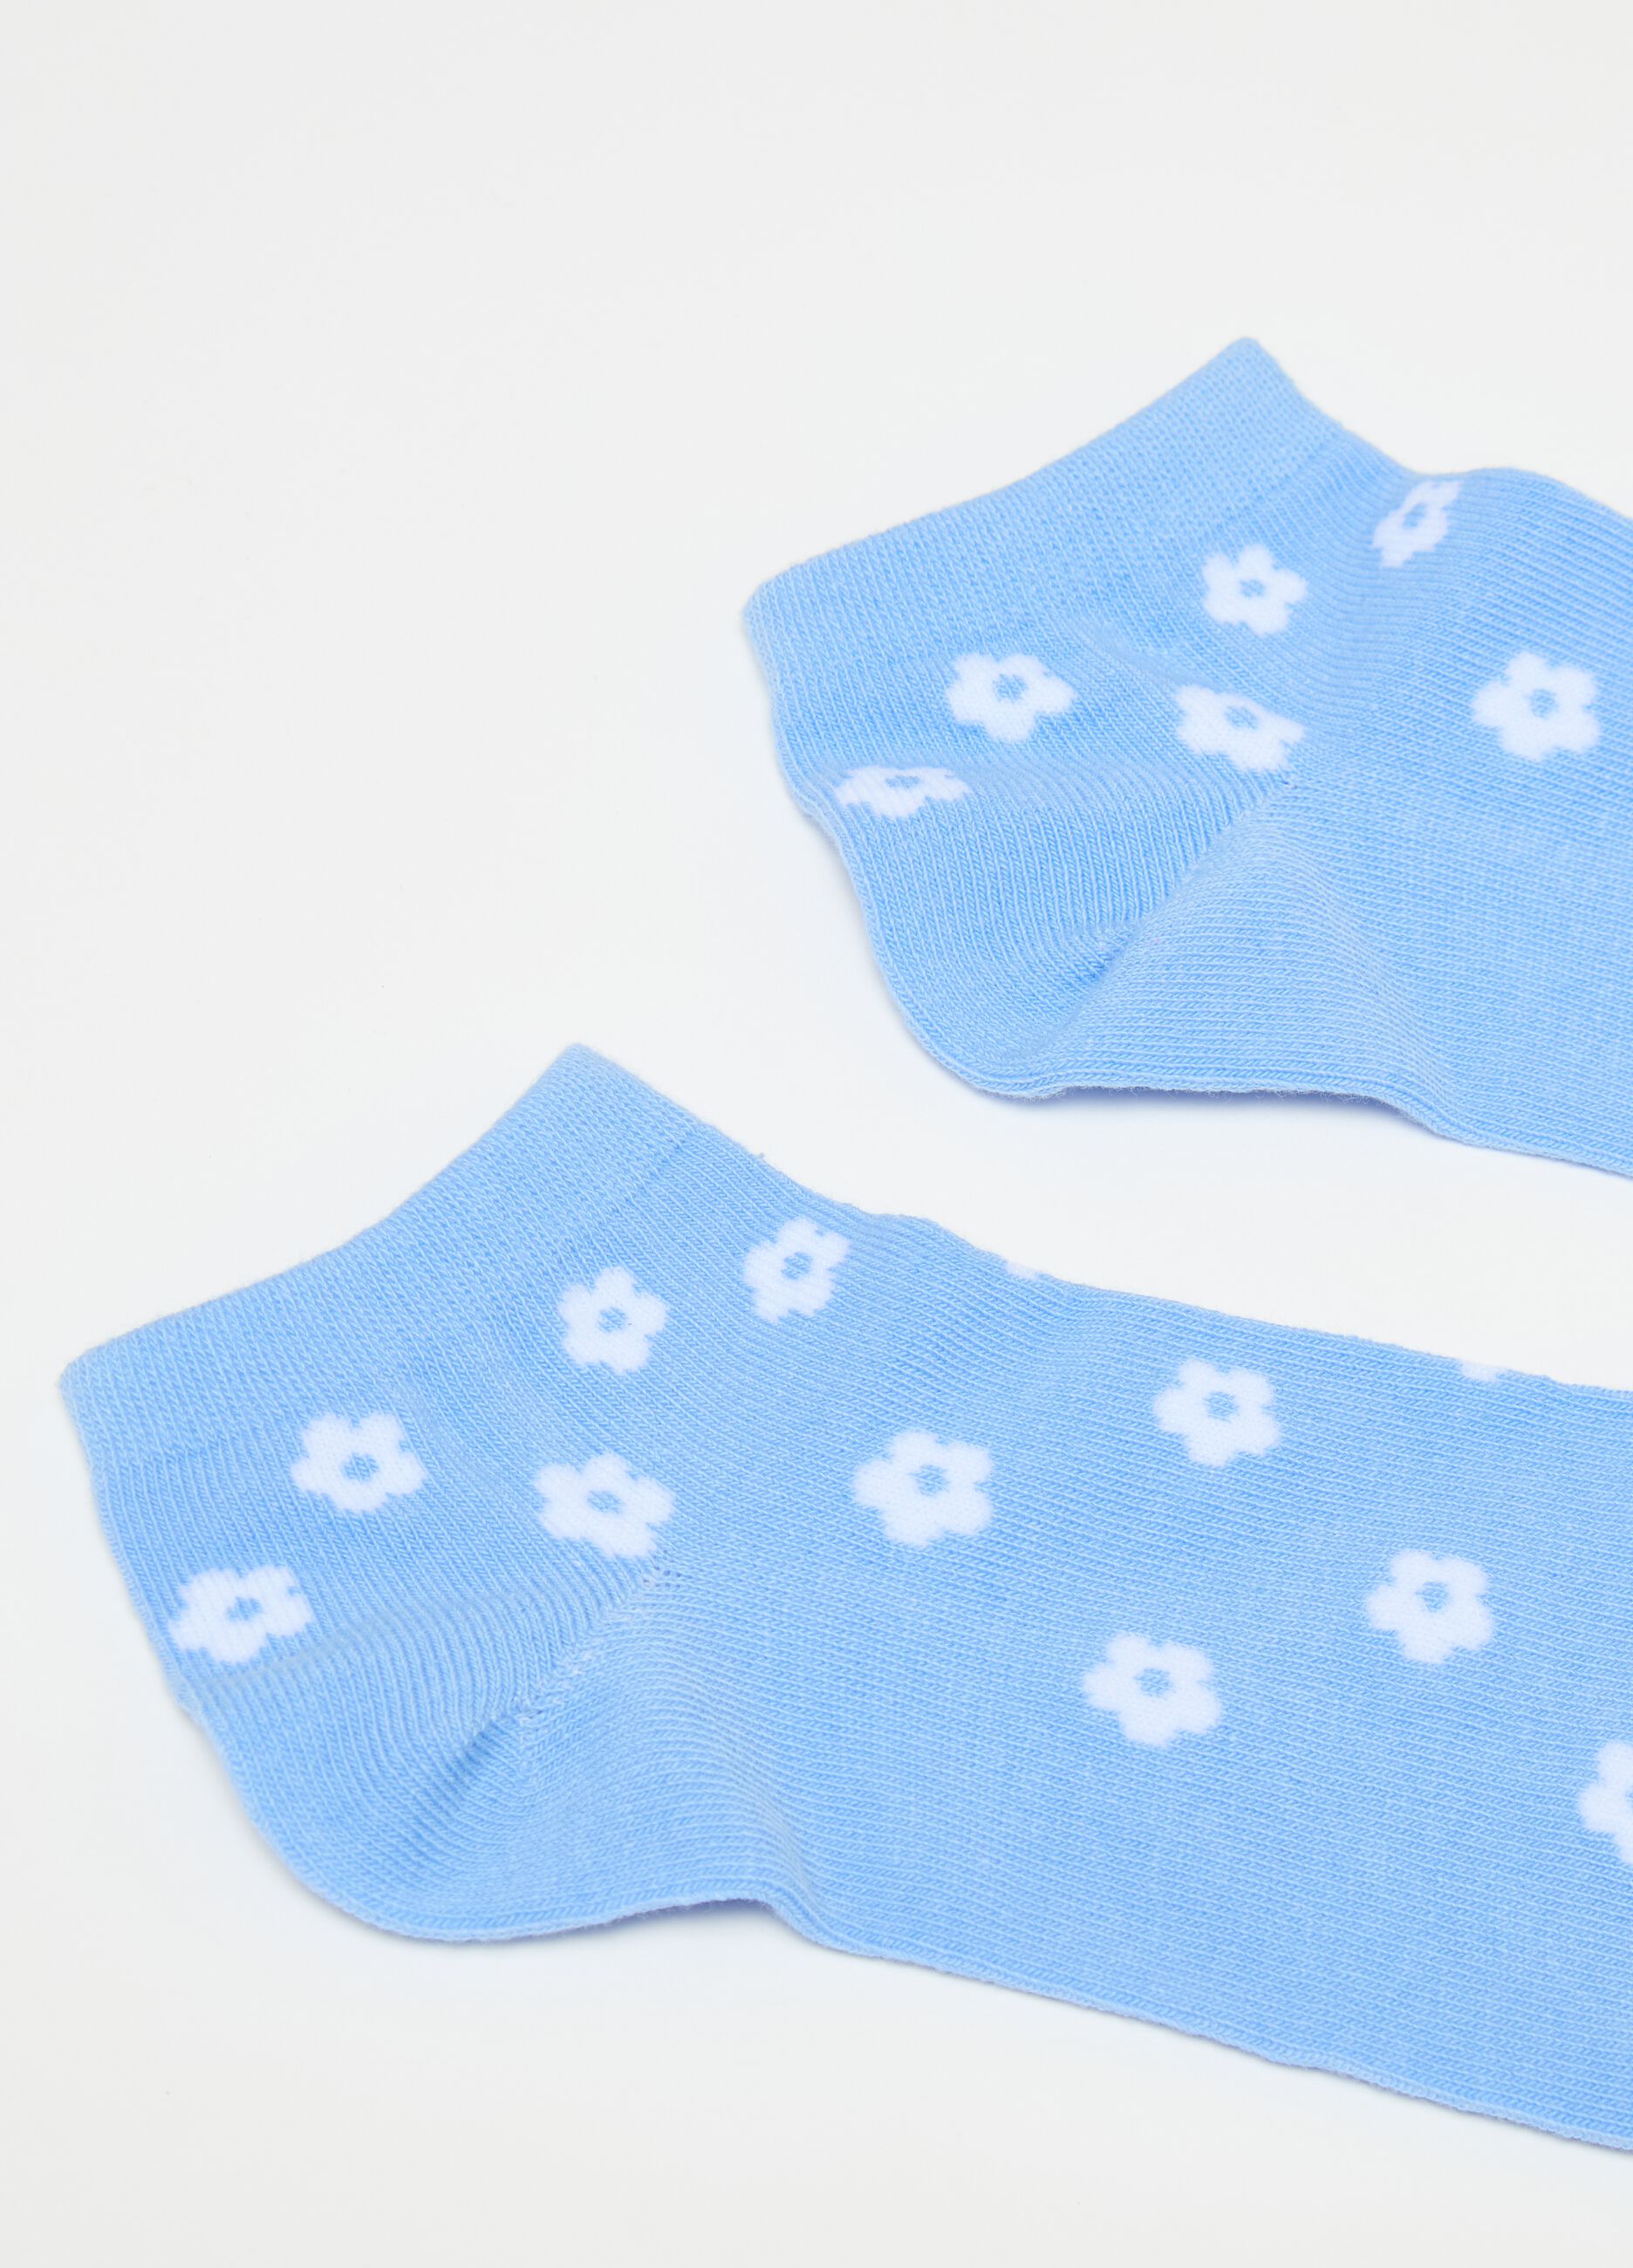 Multipack siete calcetines invisibles con florecitas